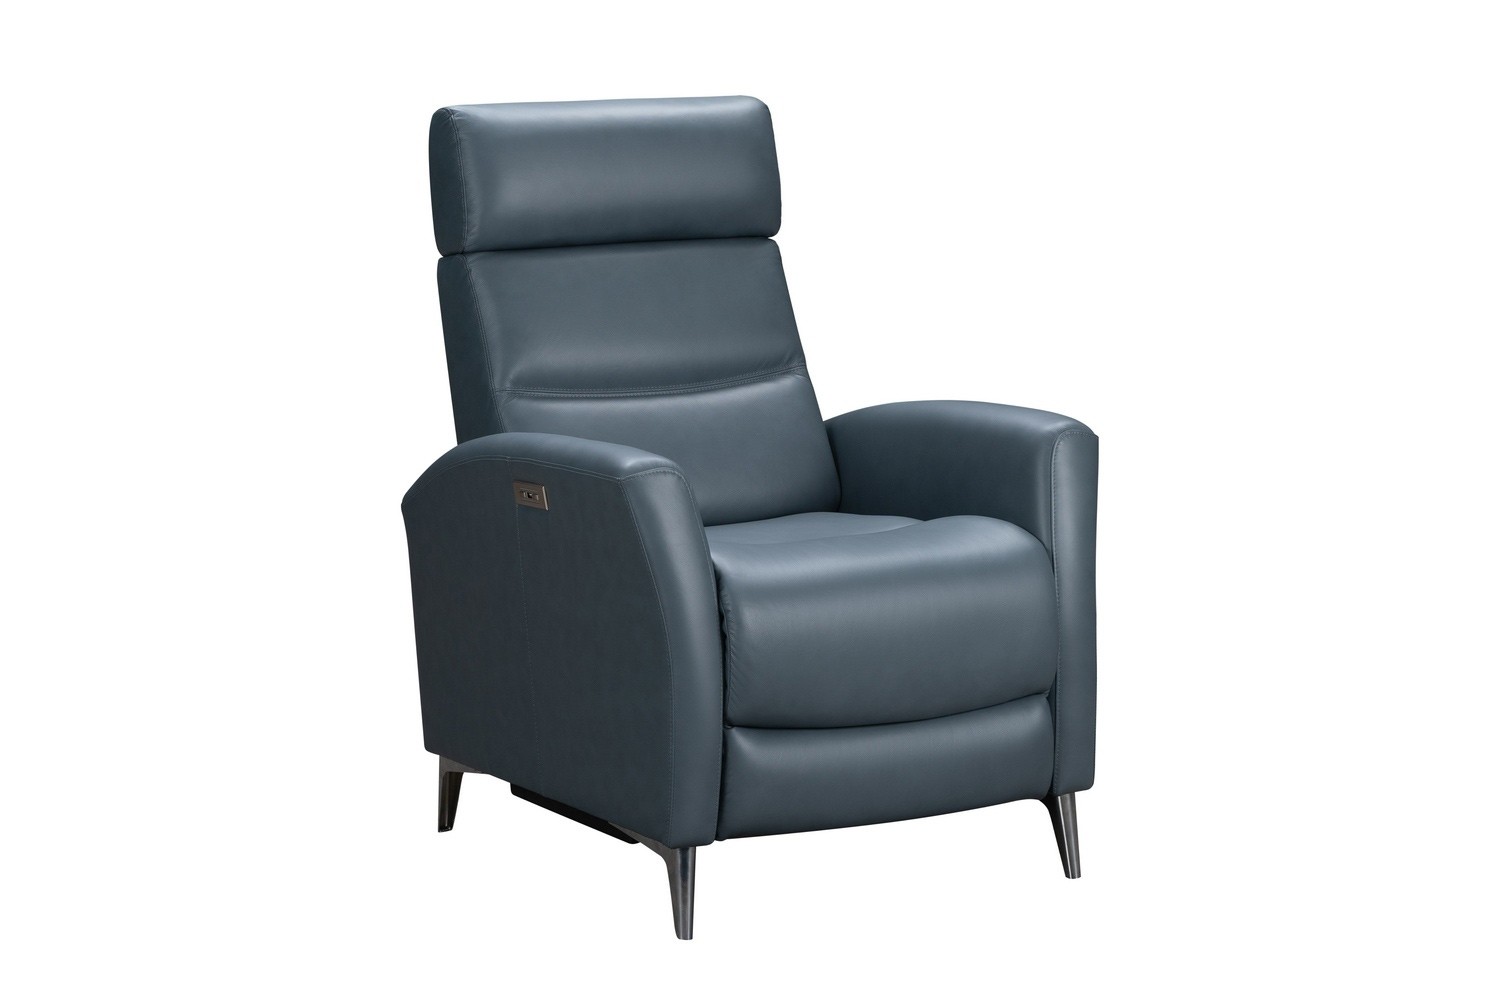 Barcalounger Zane Power Recliner Chair - Masen Bluegray/Leather Match